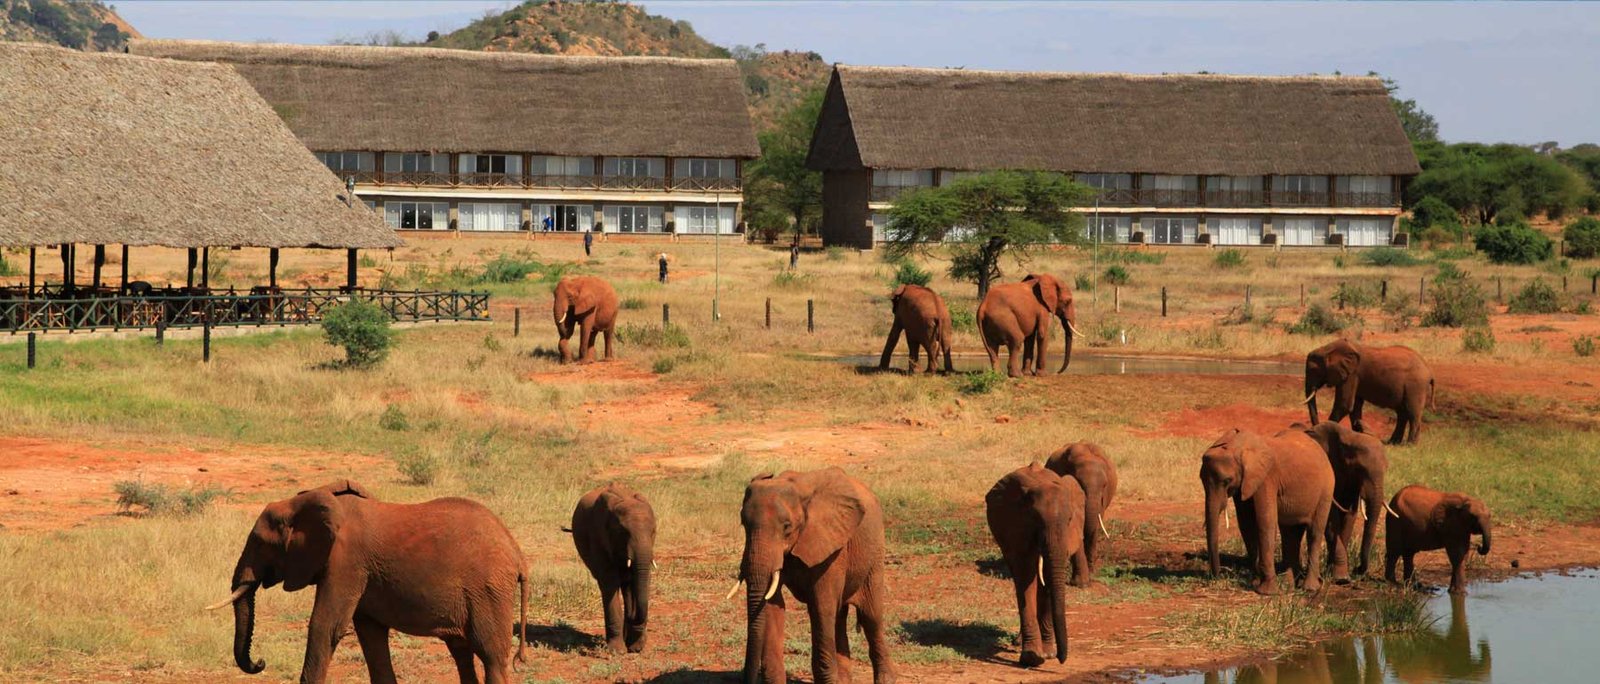 Budget Kenya Safari